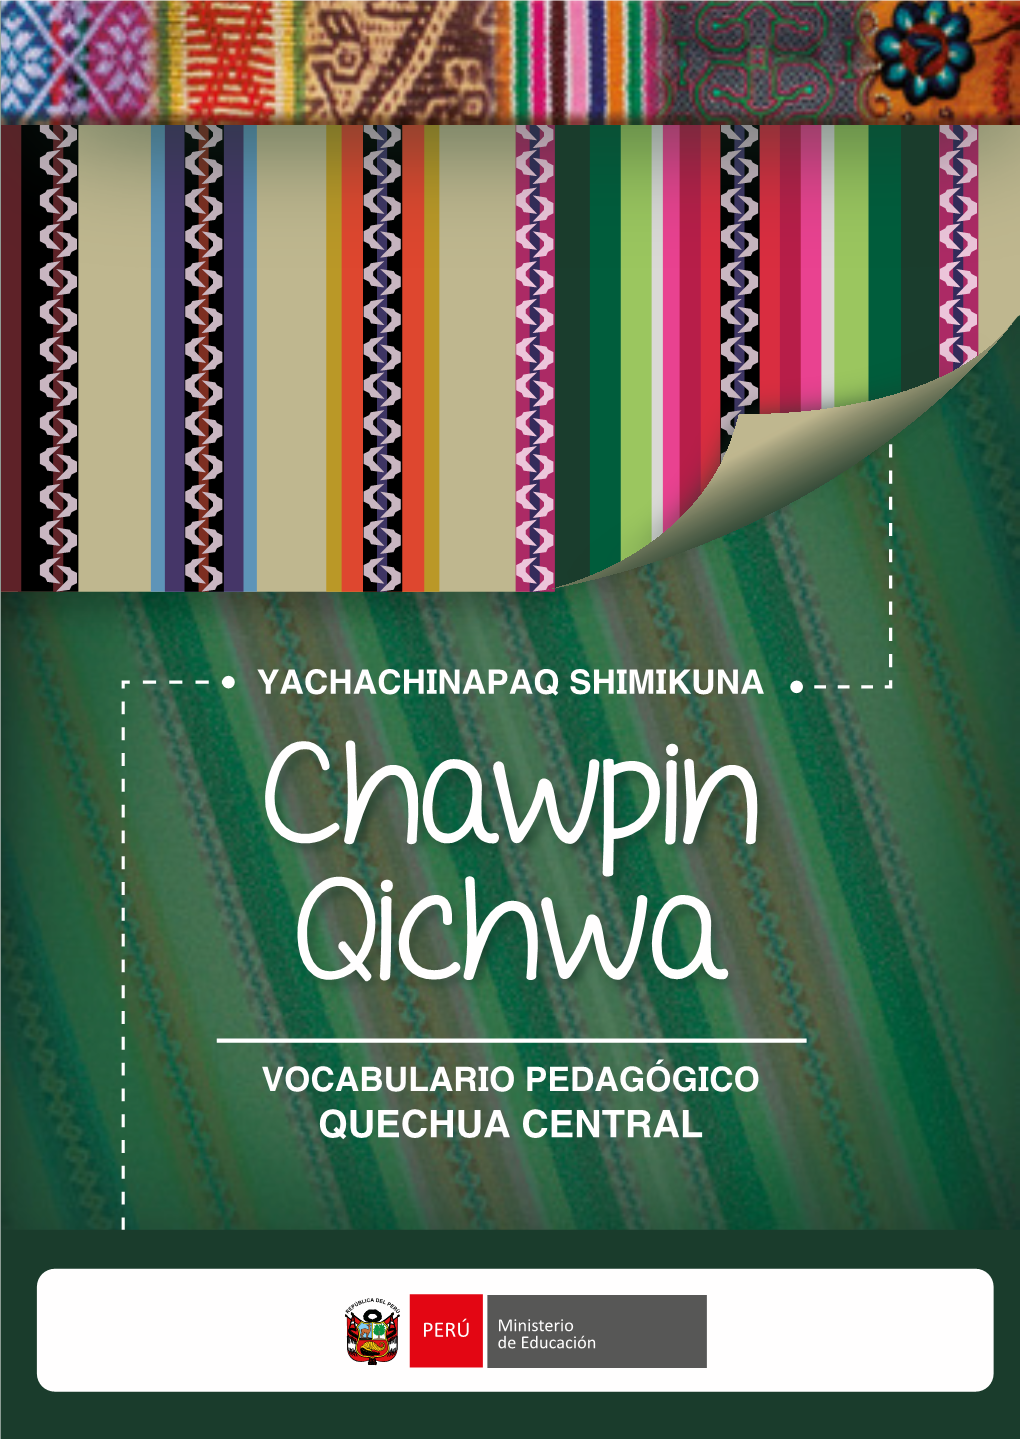 Quechua Central Quechua